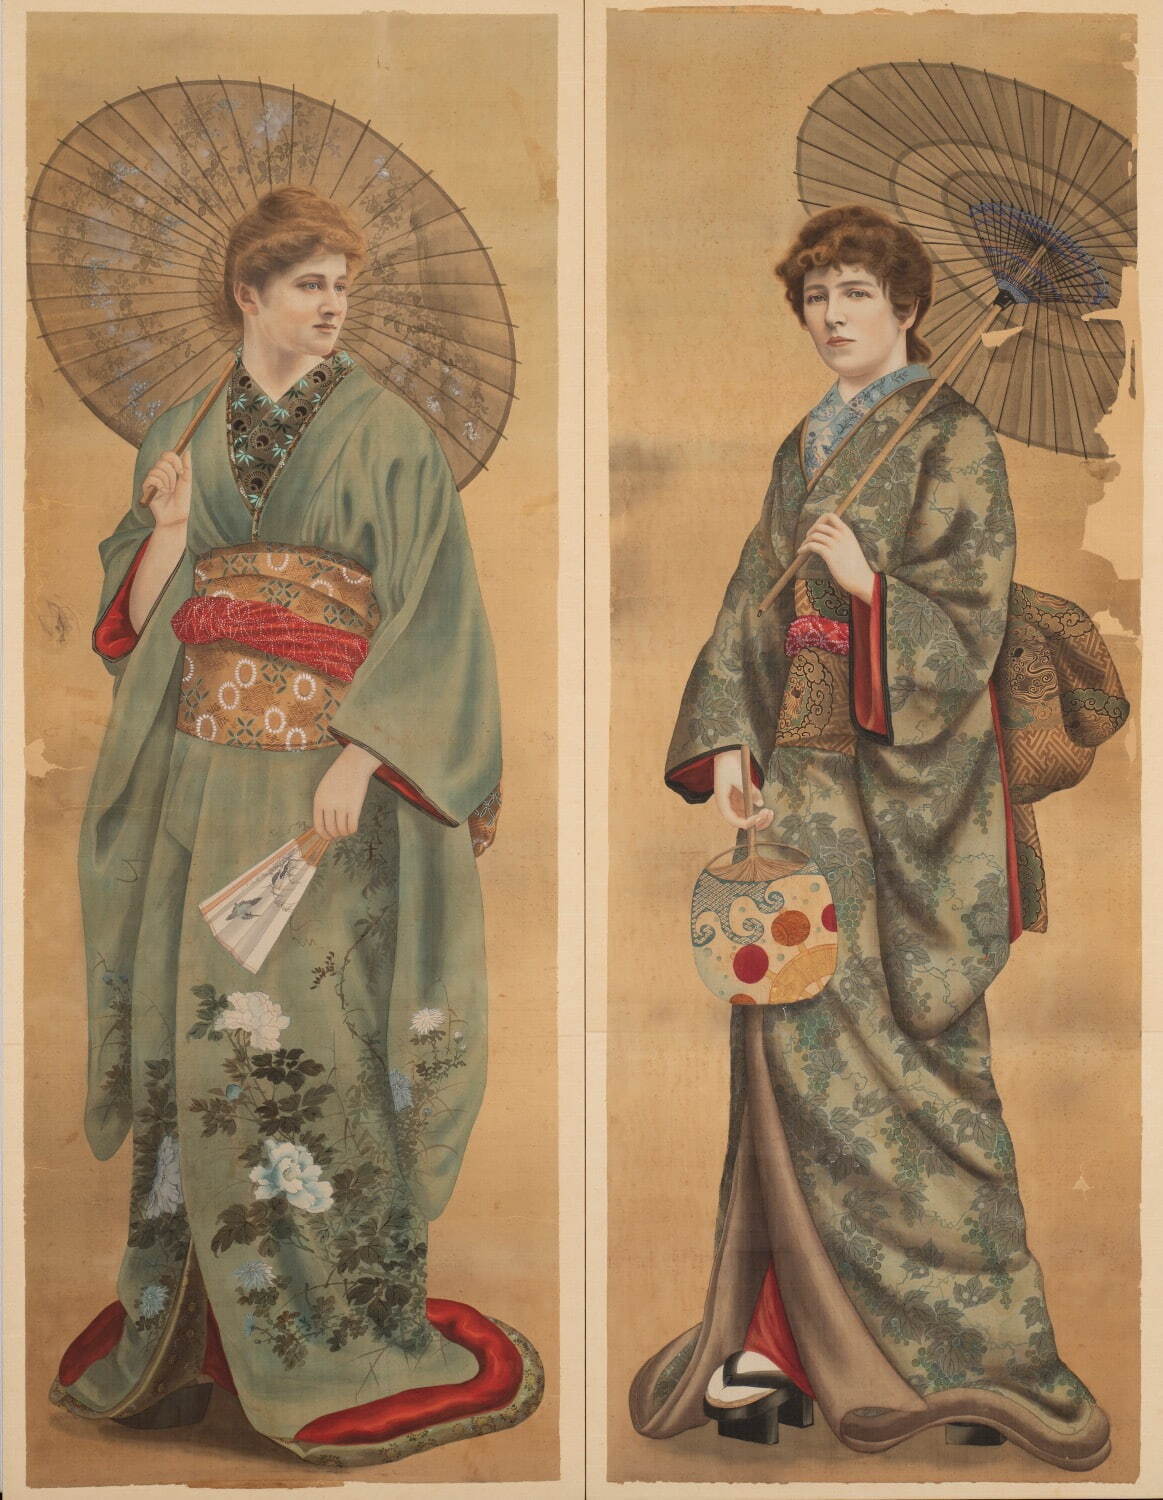 発見された日本の風景展」長野県立美術館で、明治期日本の風景や風俗を 